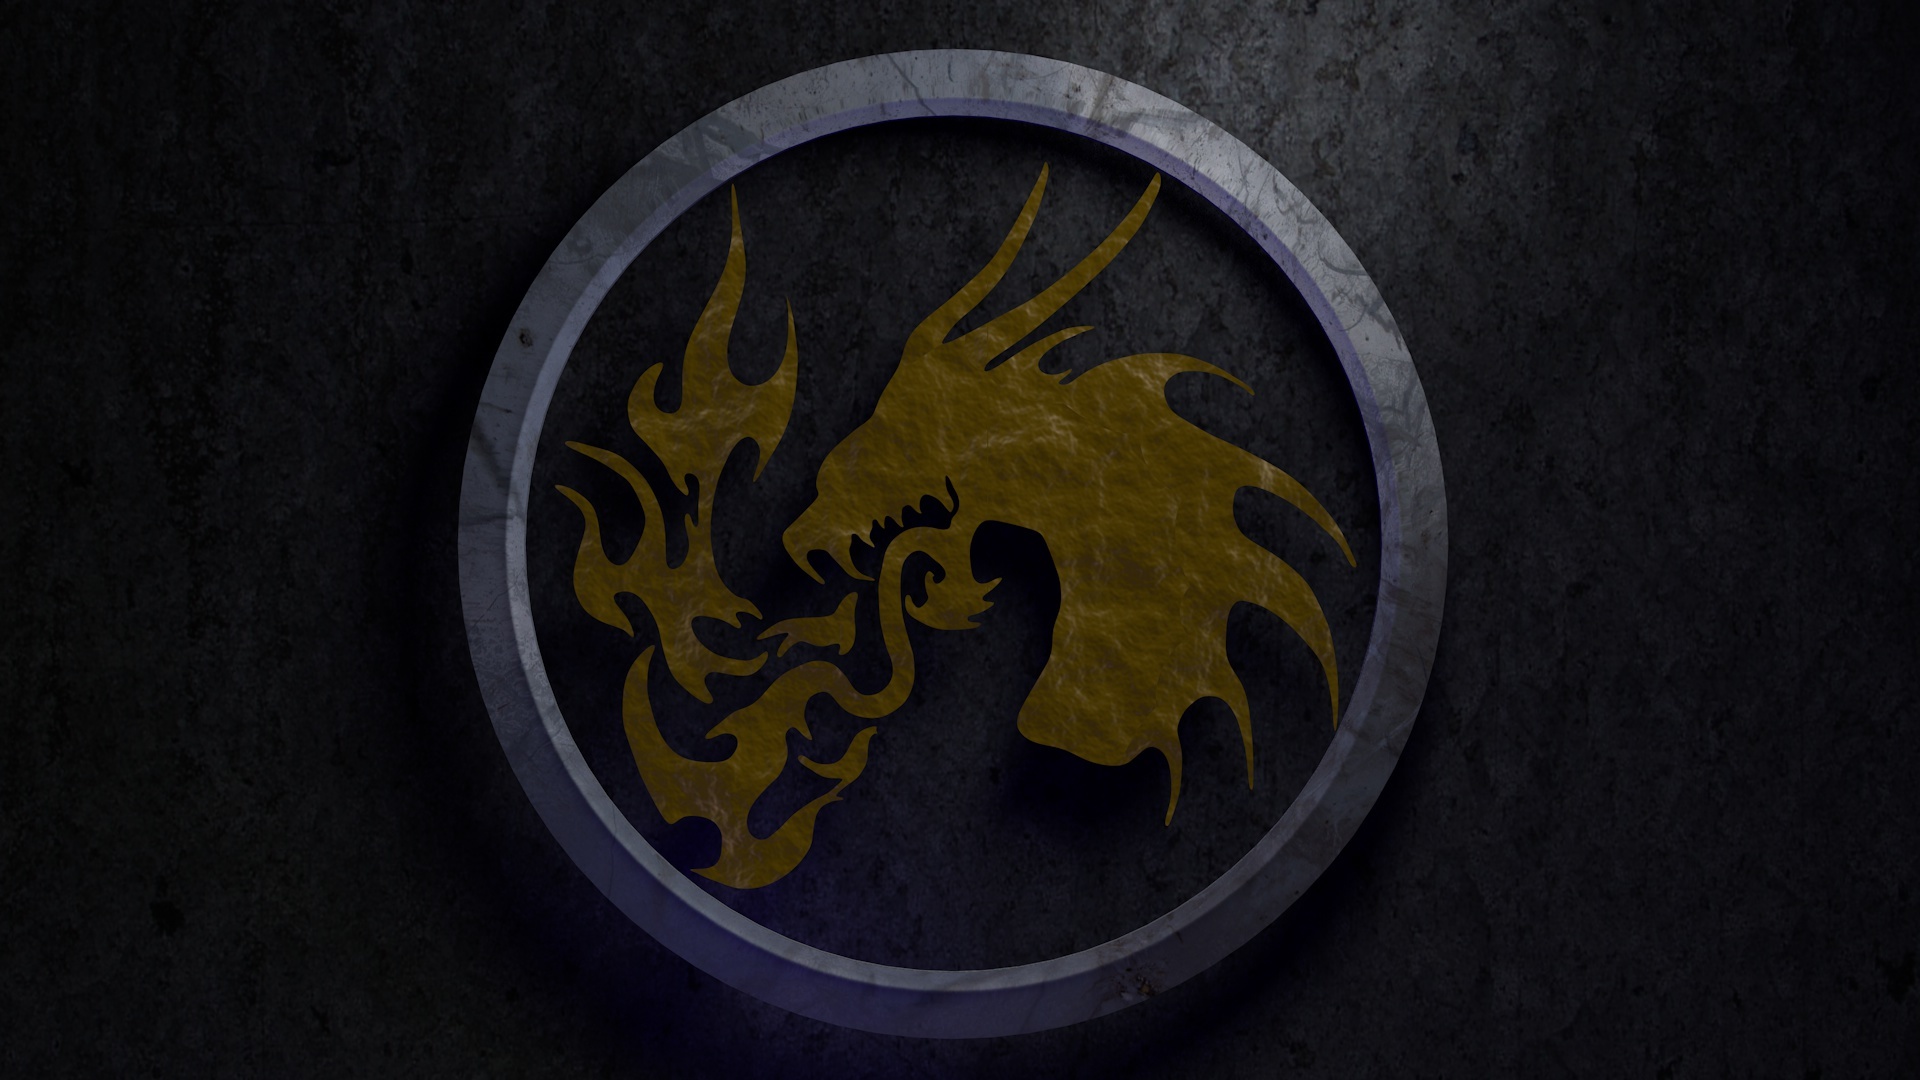 Dragon logo Wallpaper 44647 1920x1080